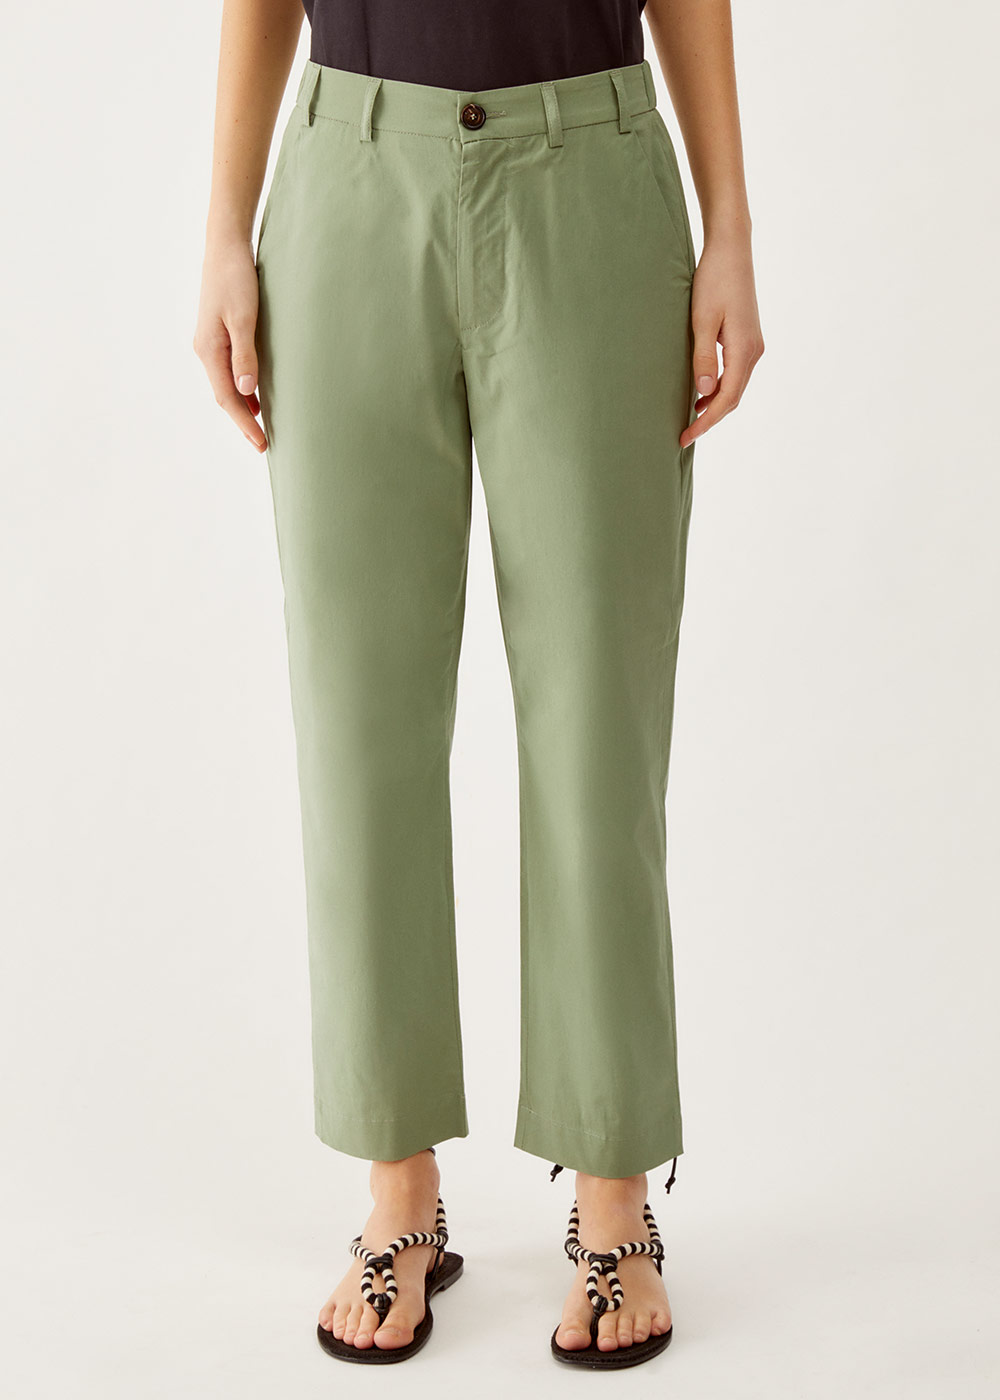 Pantalone regular fit in poplin di cotone stretch, verde 002